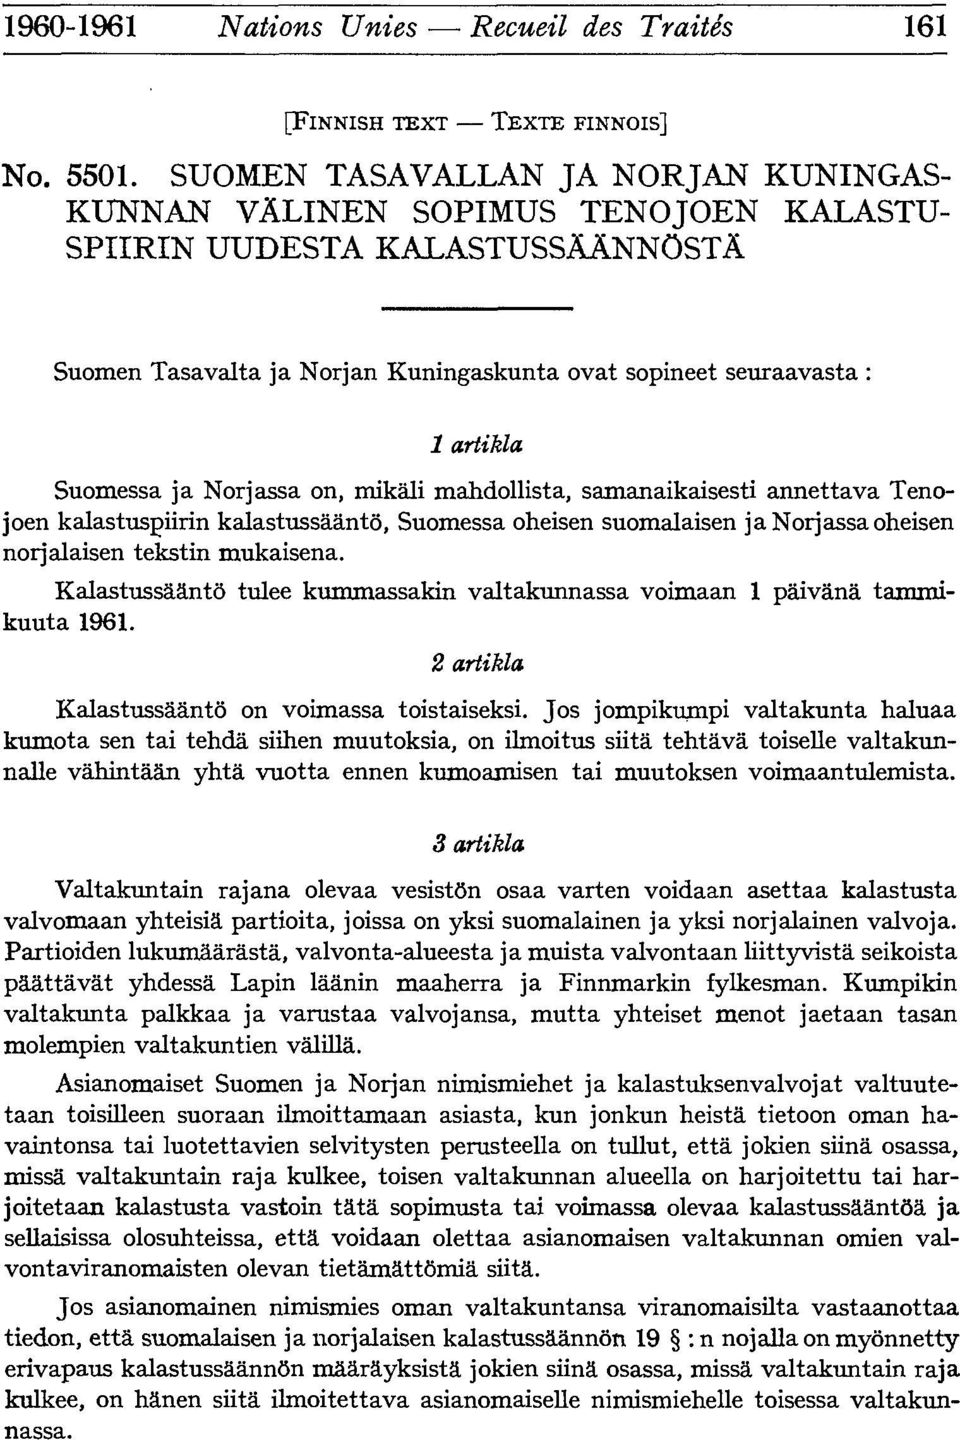 Suomessa ja Norjassa on, mikëli mahdollista, samanaikaisesti annettava Tenojoen kalastuspiirin kalastussâântô, Suomessa oheisen suomalaisen janorjassaoheisen norjalaisen tekstin mukaisena.